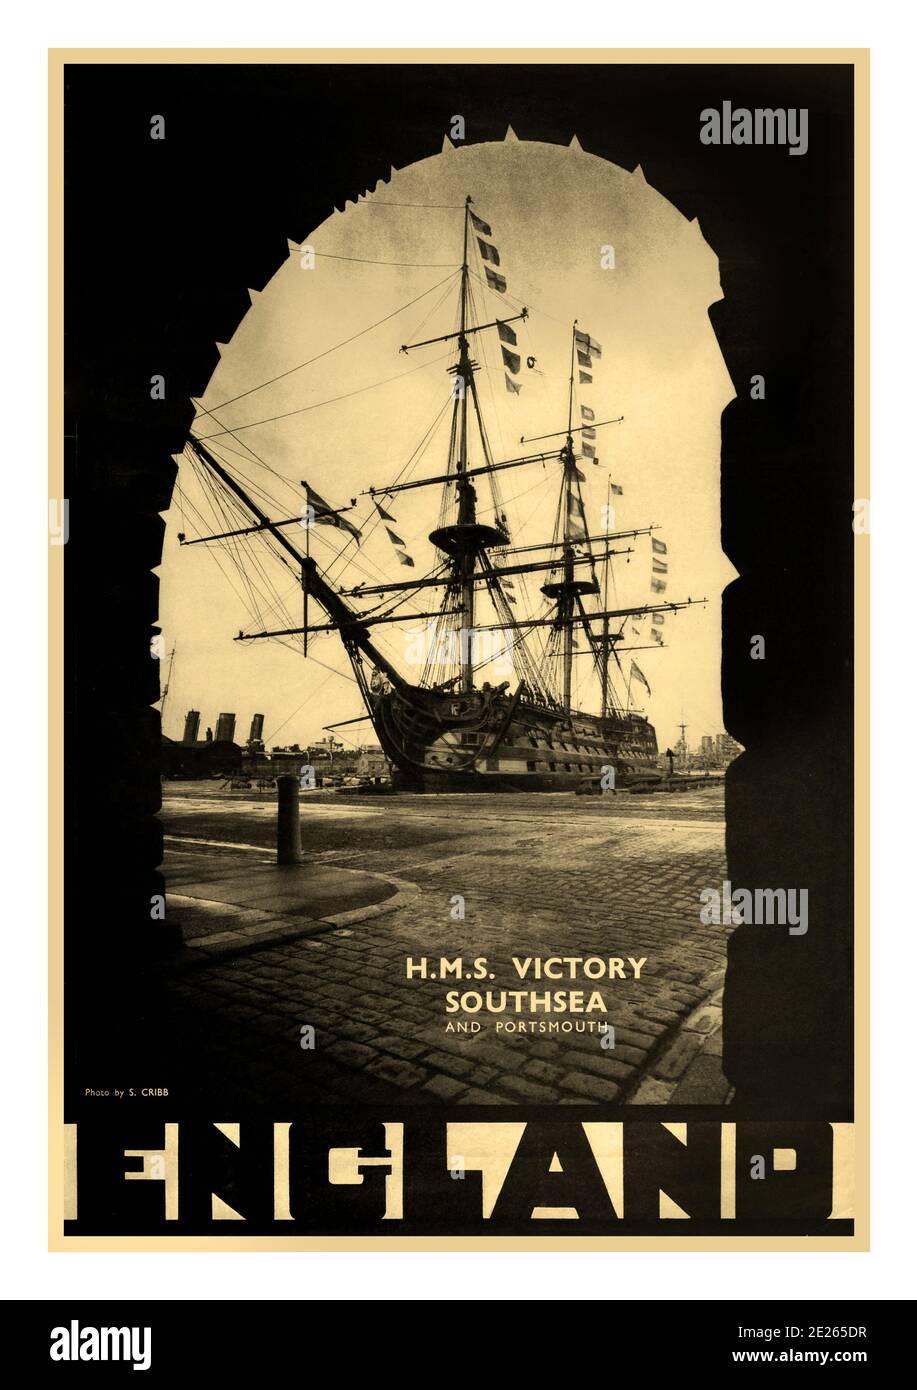 El cartel publicitario de viajes de la época del HMS VICTORY de 1930 para el HMS Victory - Southsea y Portsmouth - Inglaterra - Monotone Photo de S. Cribb presenta el HMS Victory enmarcado por un arco de ladrillo con una frontera negra y letras estilizadas. Reino Unido, diseñador: S. Cribb, 1930 Foto de stock